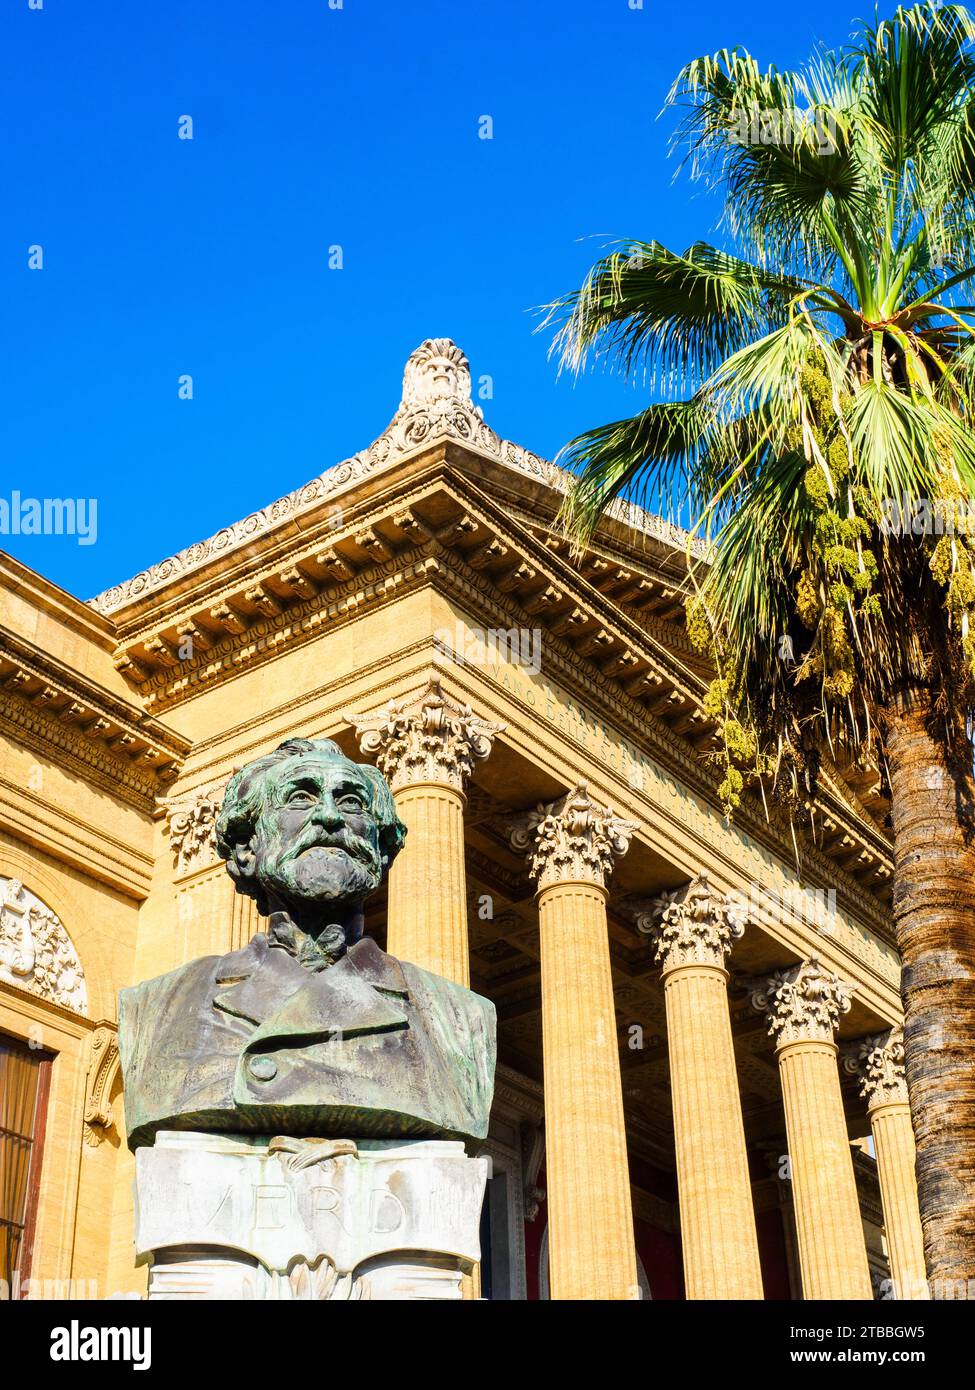 Buste de Giuseppe Verdi (1813 - 1901) devant le Teatro Massimo - Palerme, Italie Banque D'Images